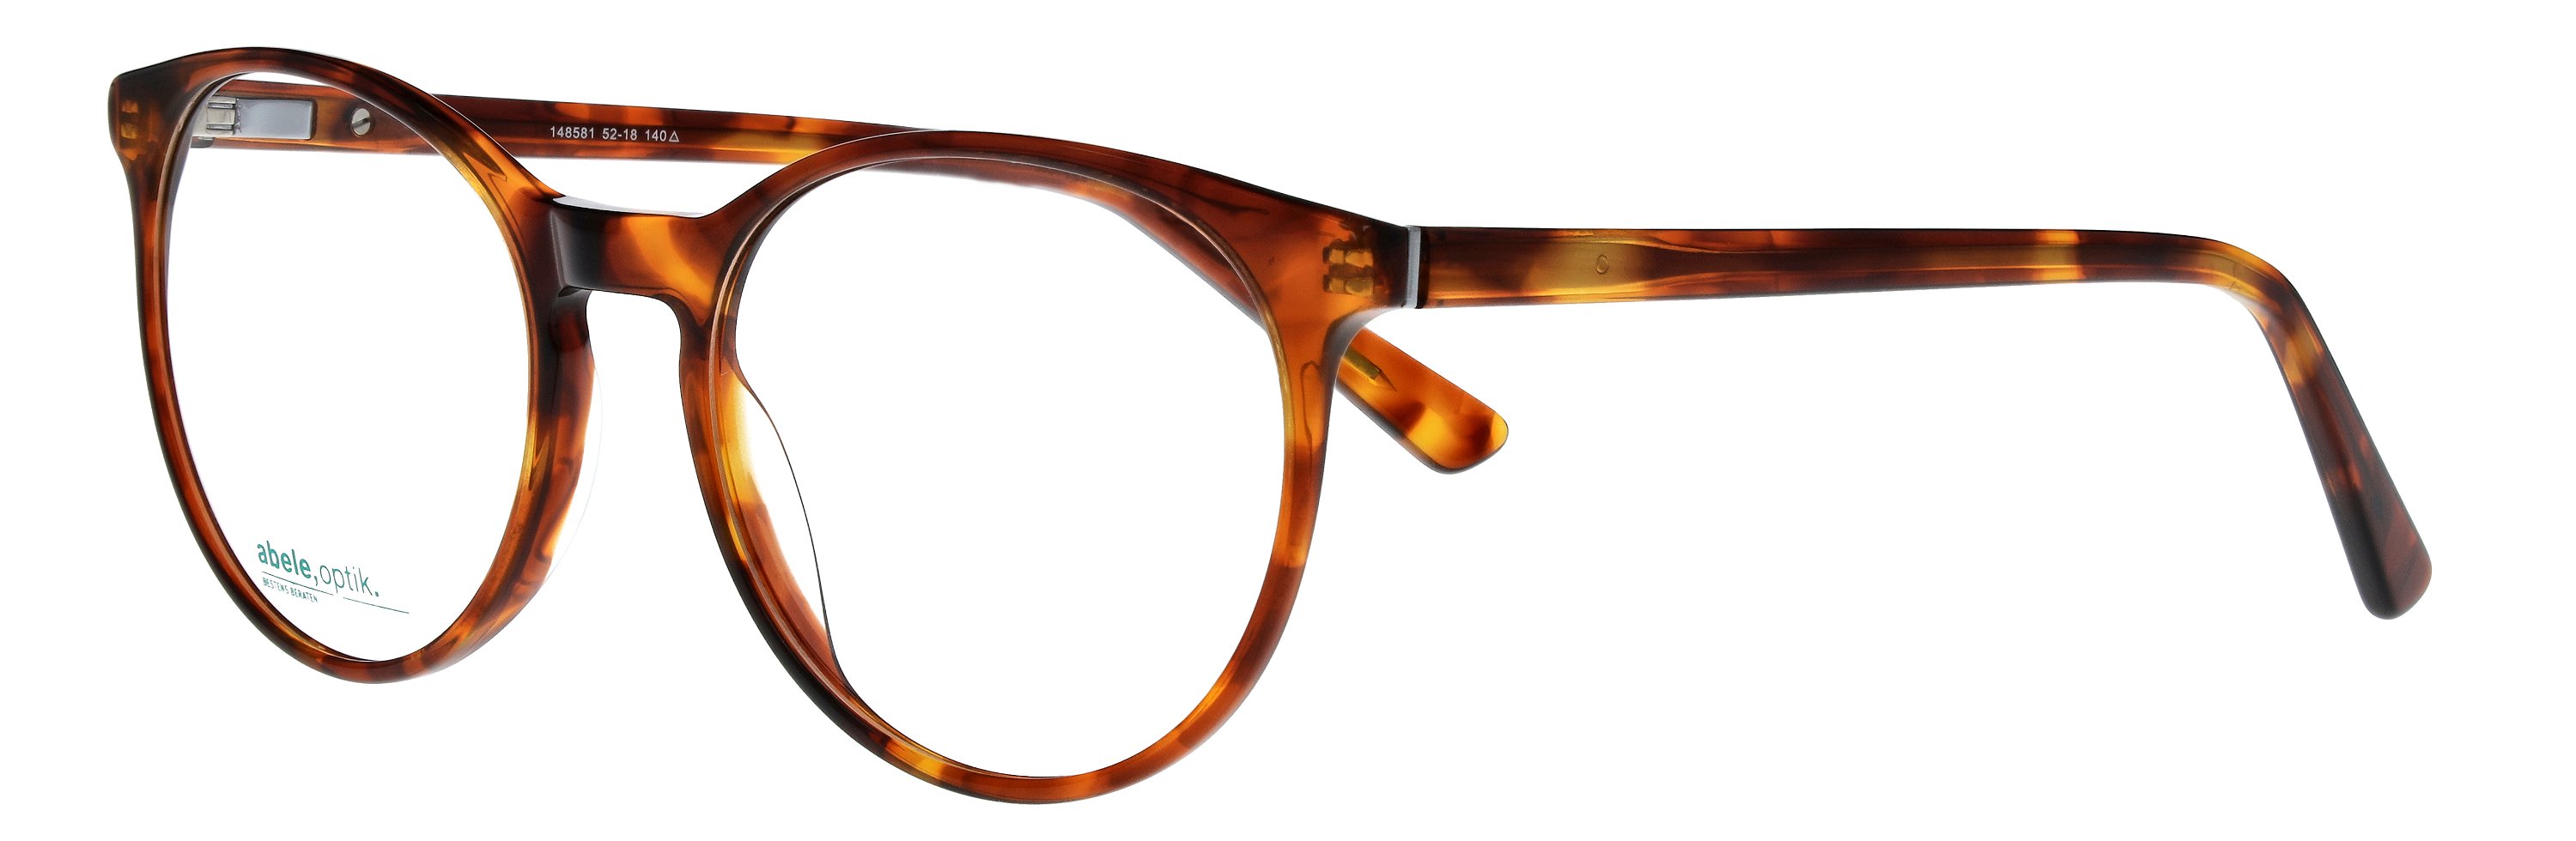 Das Bild zeigt die Korrektionsbrille 148581 von der Marke Abele Optik in karamellbraun gemustert.